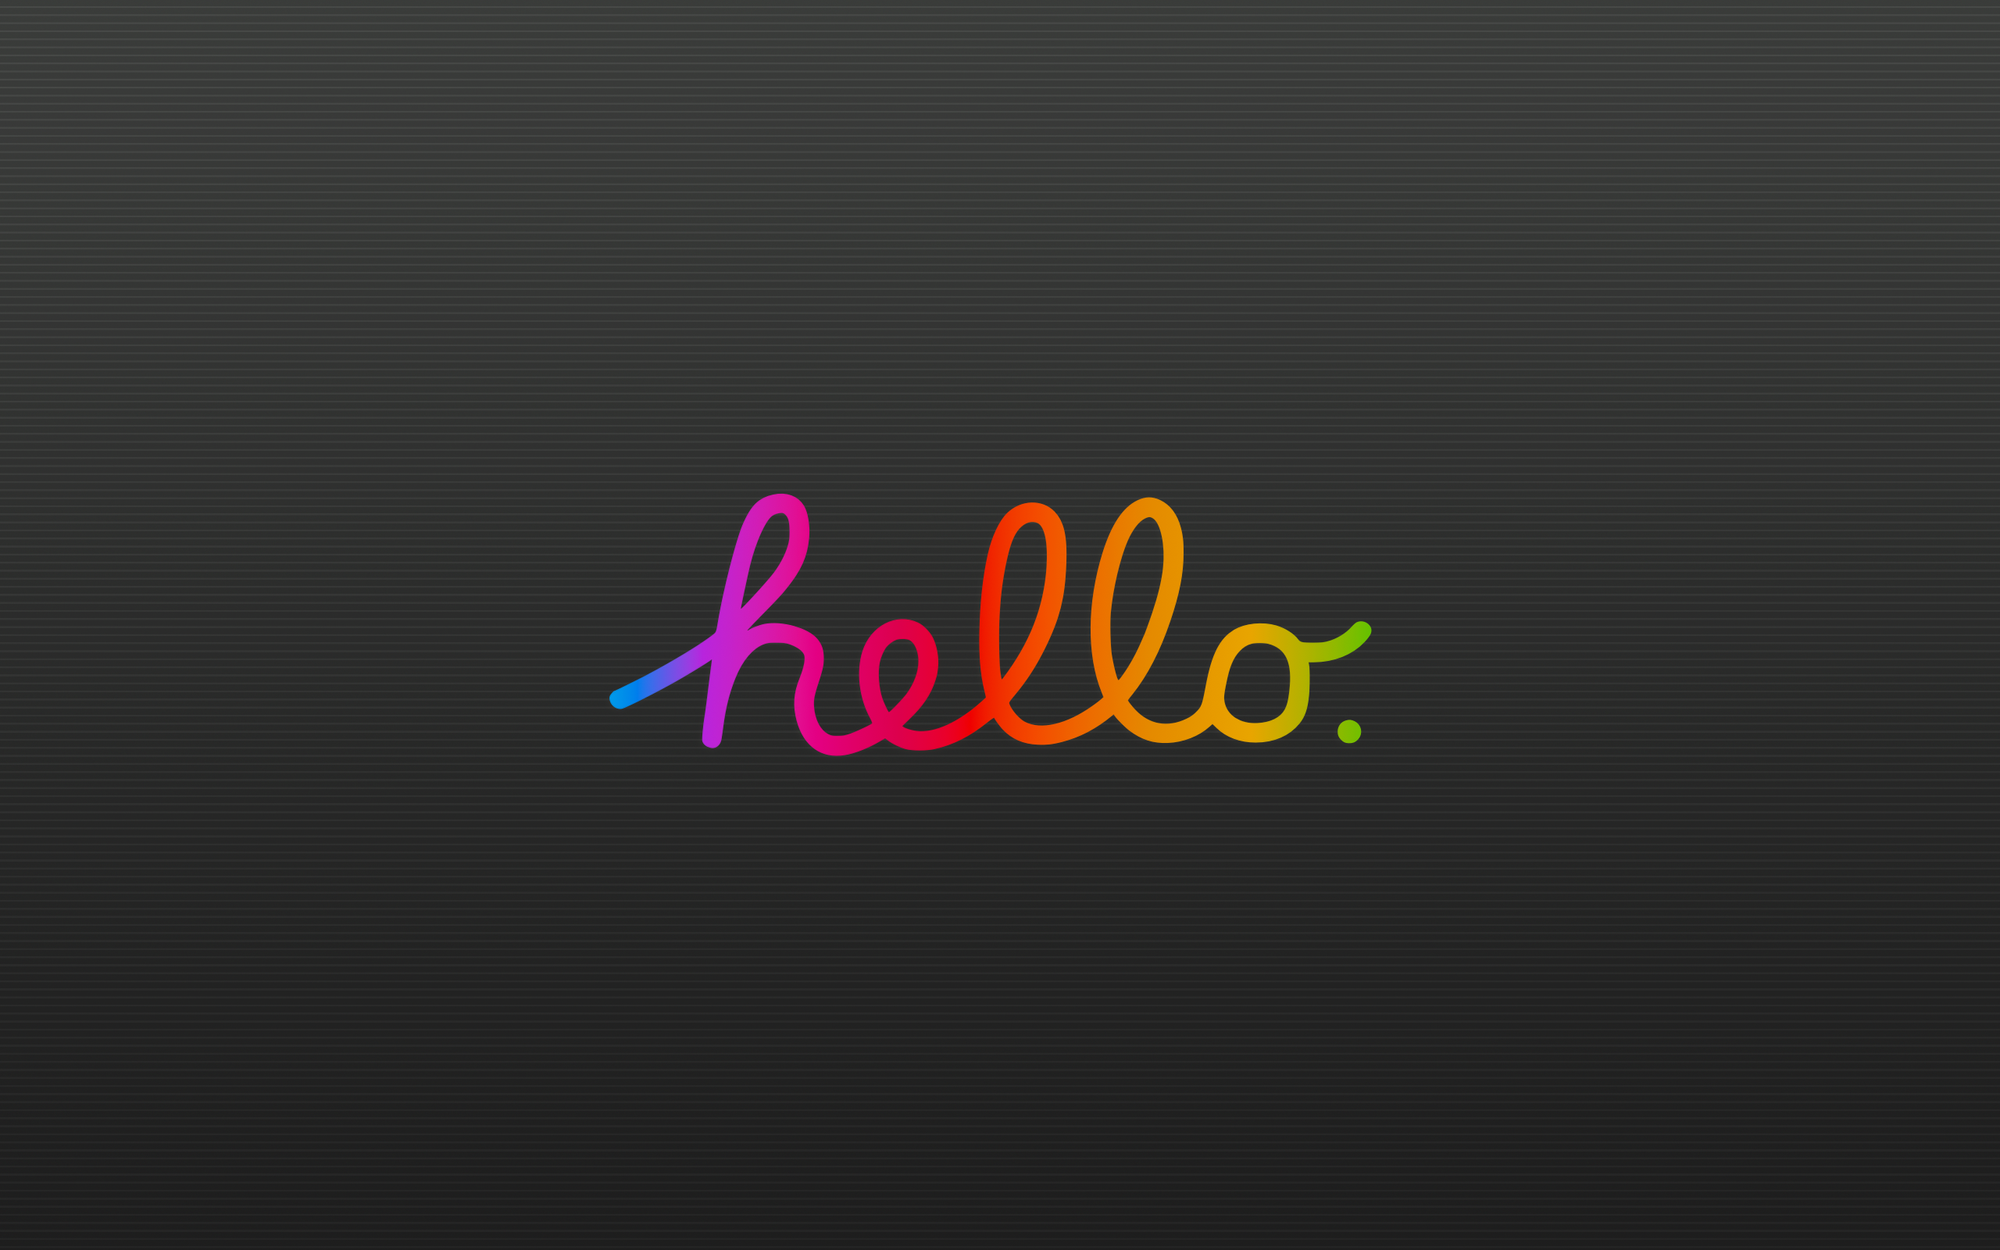 Hello, world! 👋